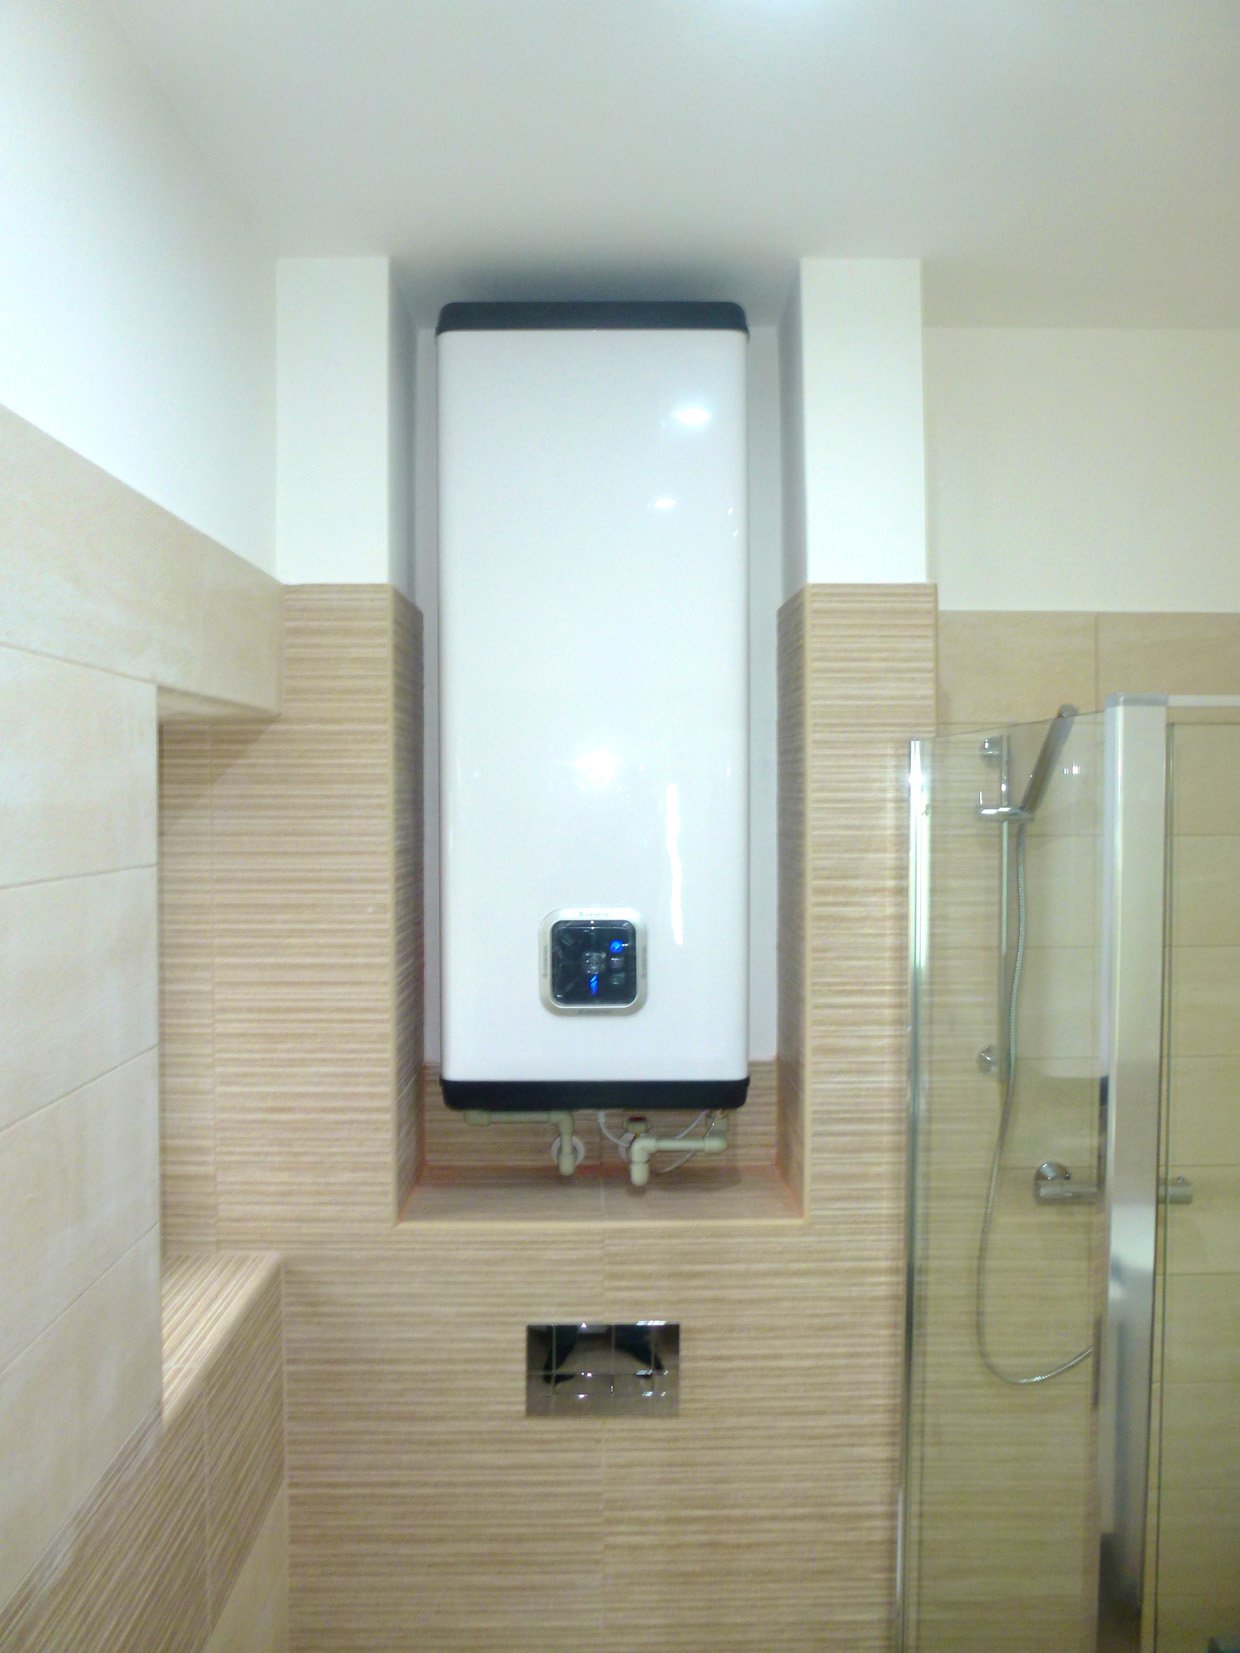 Zásobníkový ohřívač vody Ariston Velis INOX má kromě jiných např. funkci velmi rychlého ohřevu vody pro první sprchu | Koupelny-svitavy.cz